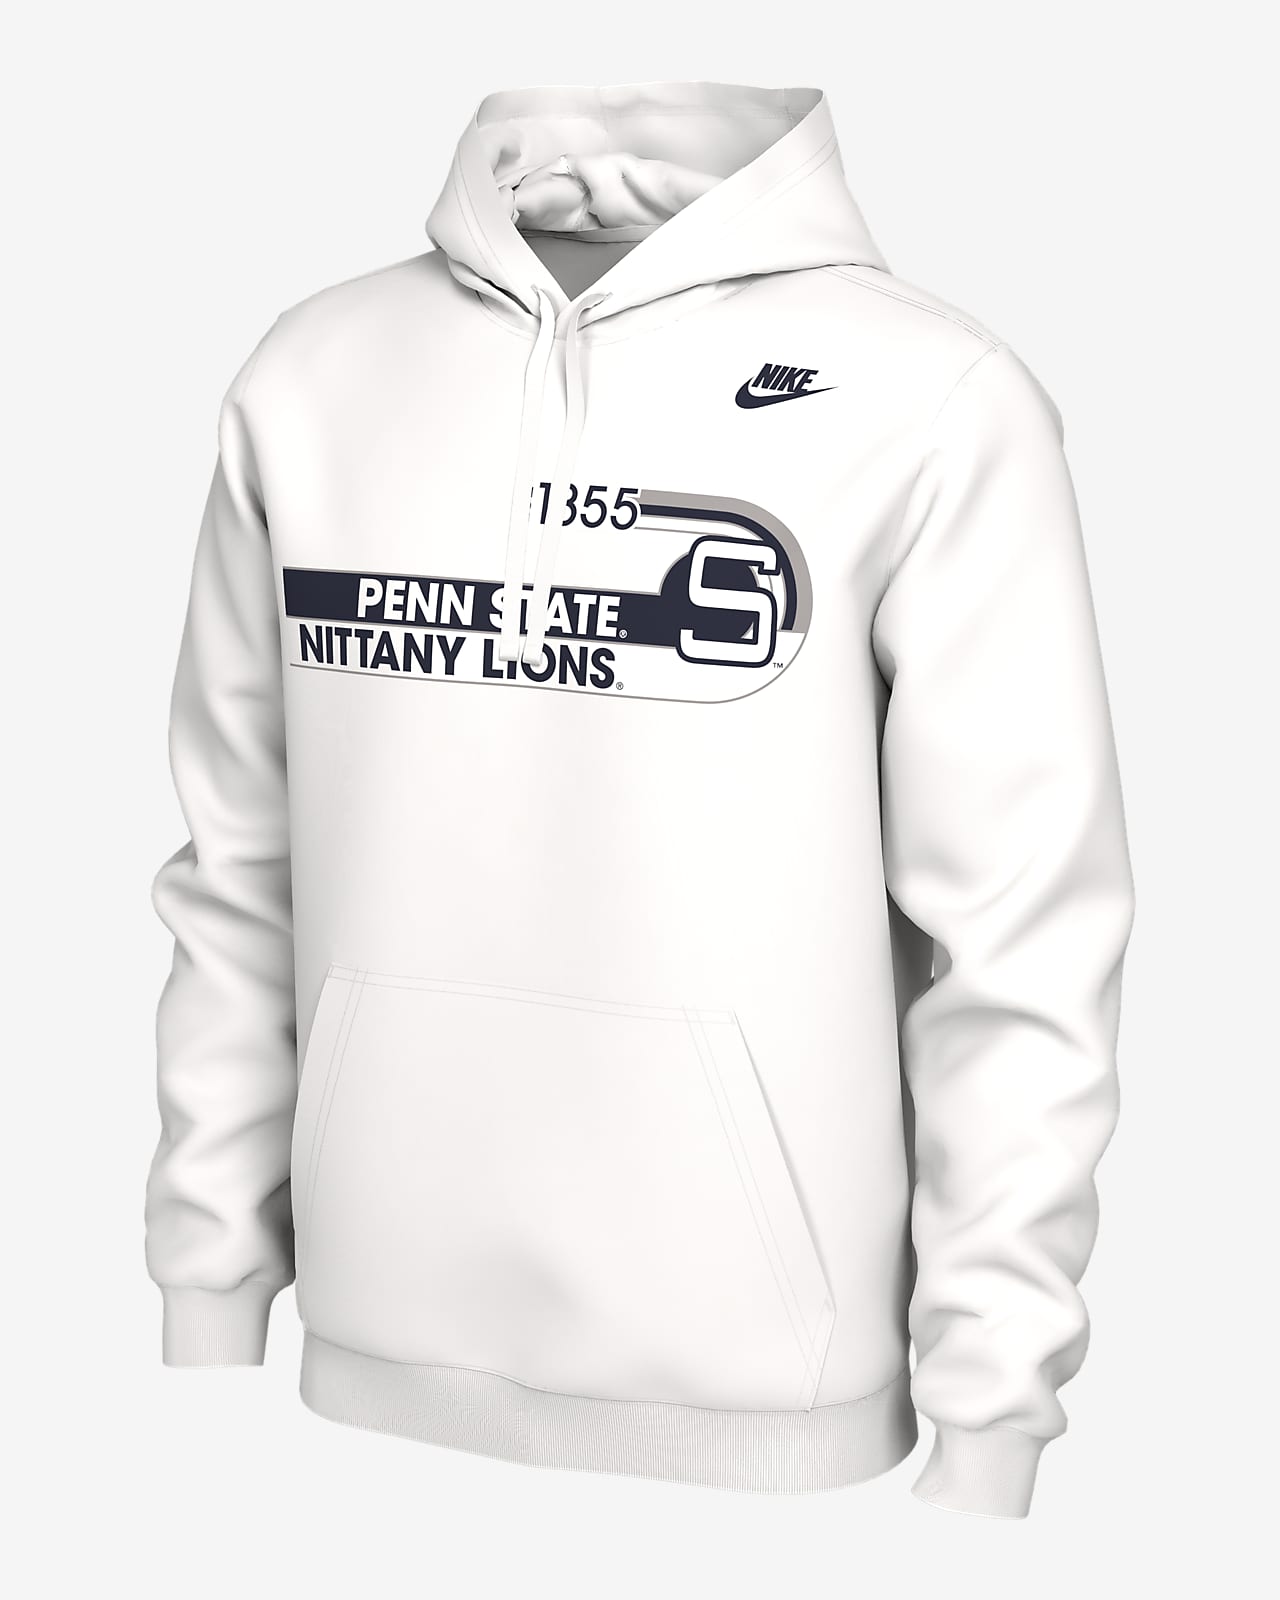 Penn State Men's Nike College Hoodie